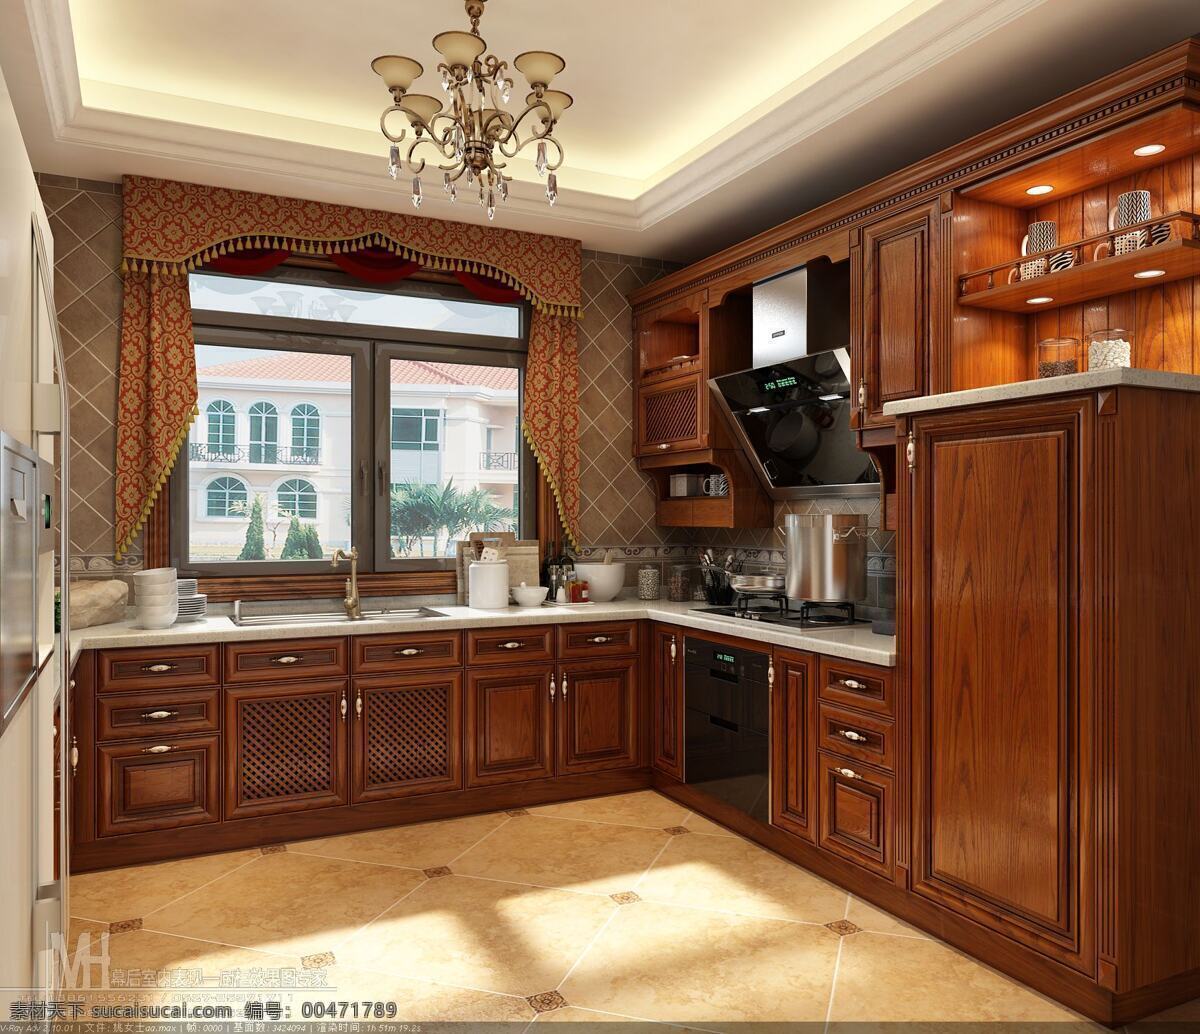 橱柜 效果图 橱柜效果图 厨房效果图 橱柜设计 厨房设计 环境设计 室内设计 红色